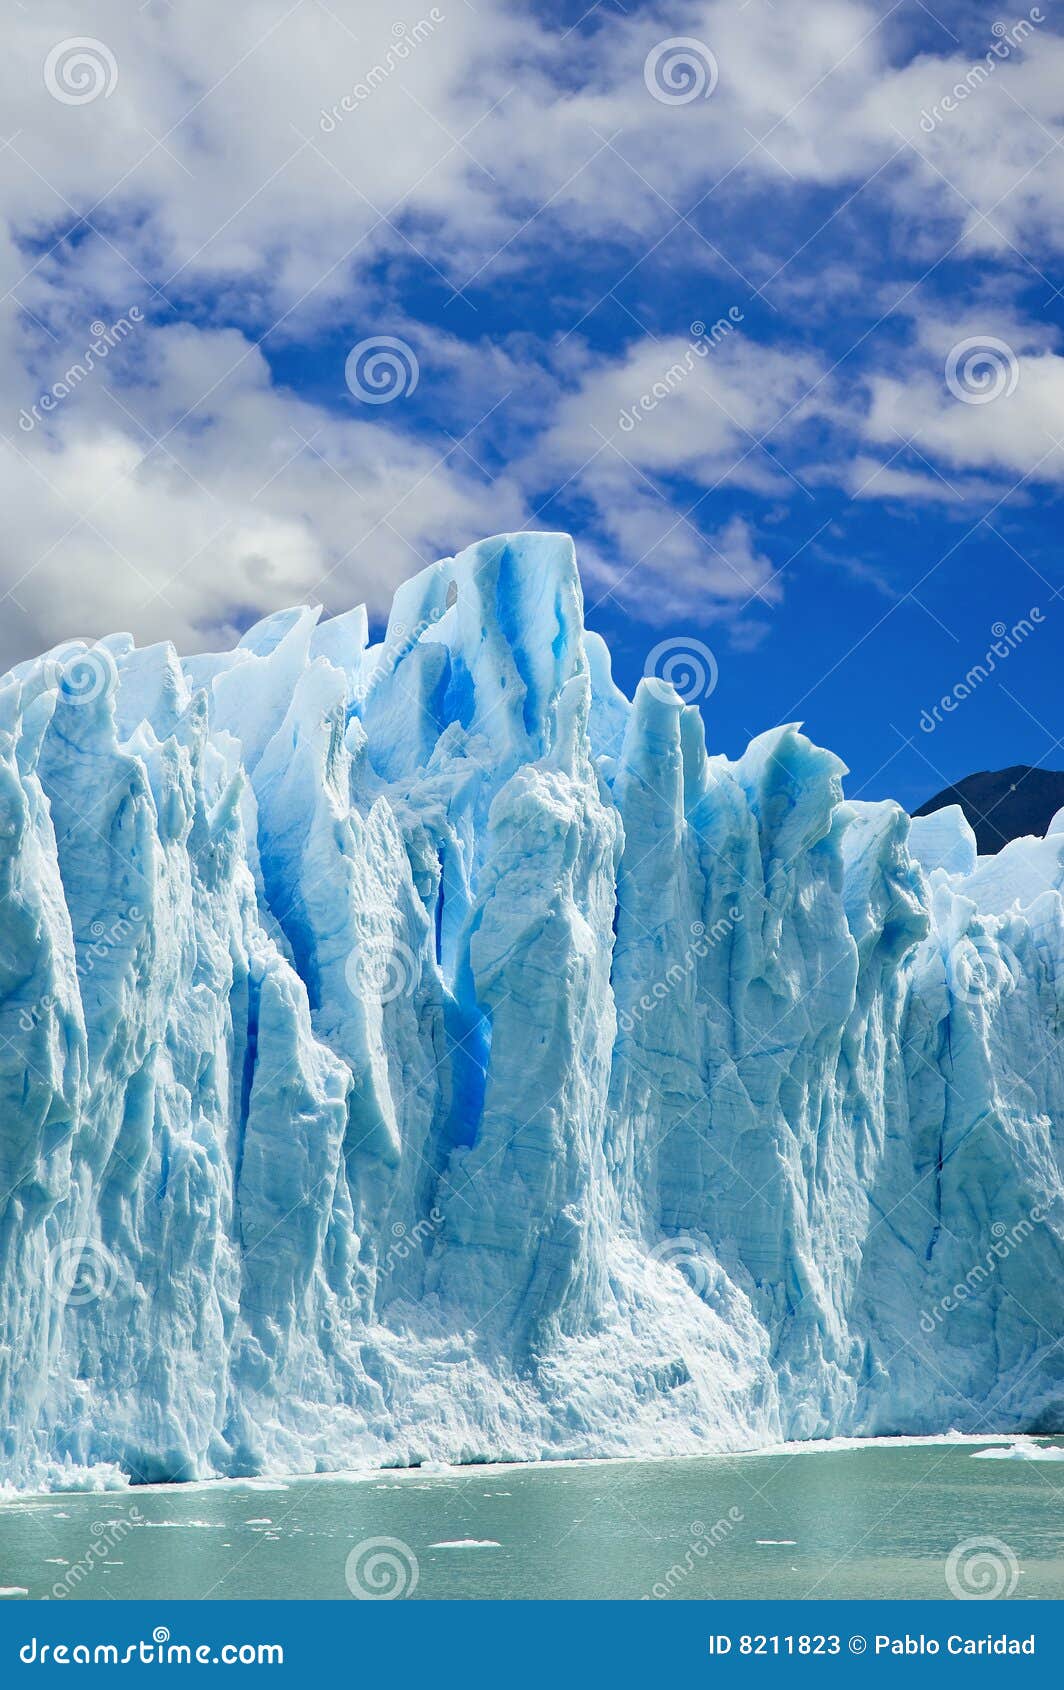 moreno glacier, patagonia argentina.